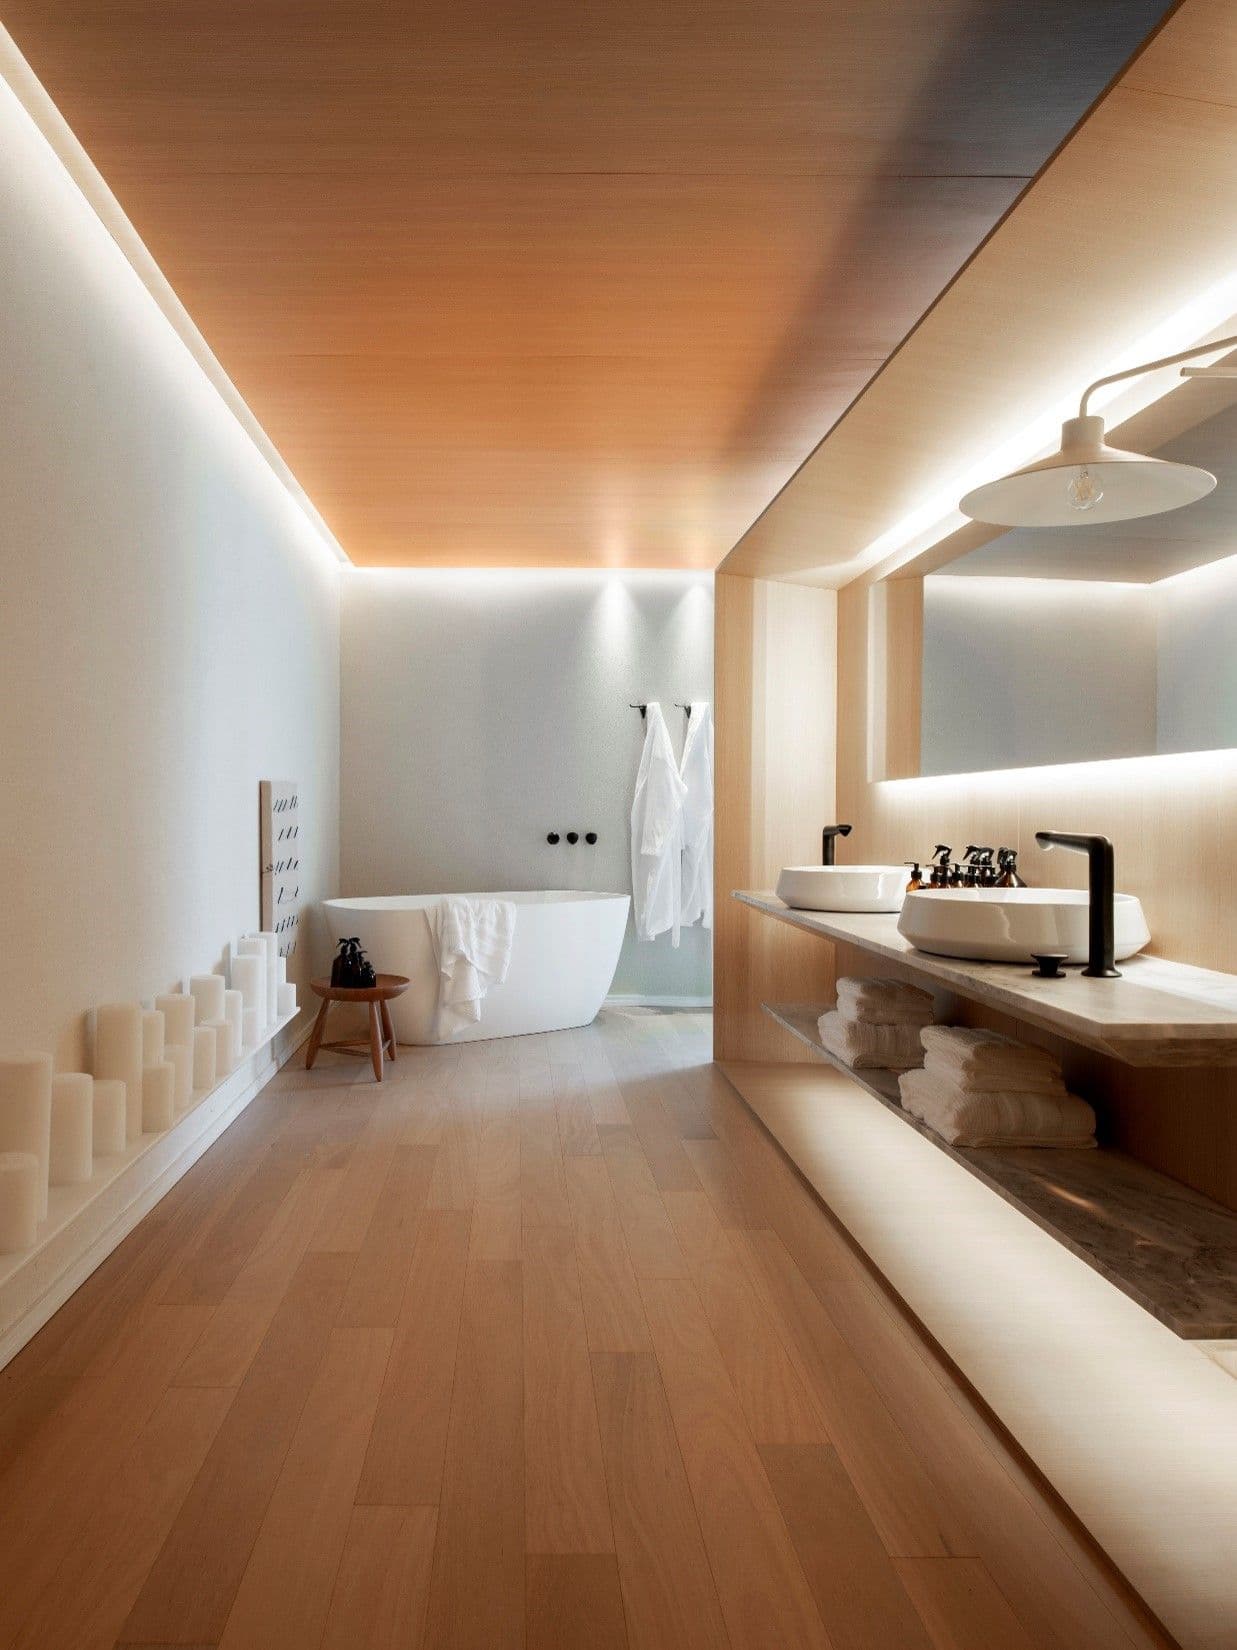 pisos-para-banheiro-4-modelos-para-se-inspirar.jpg